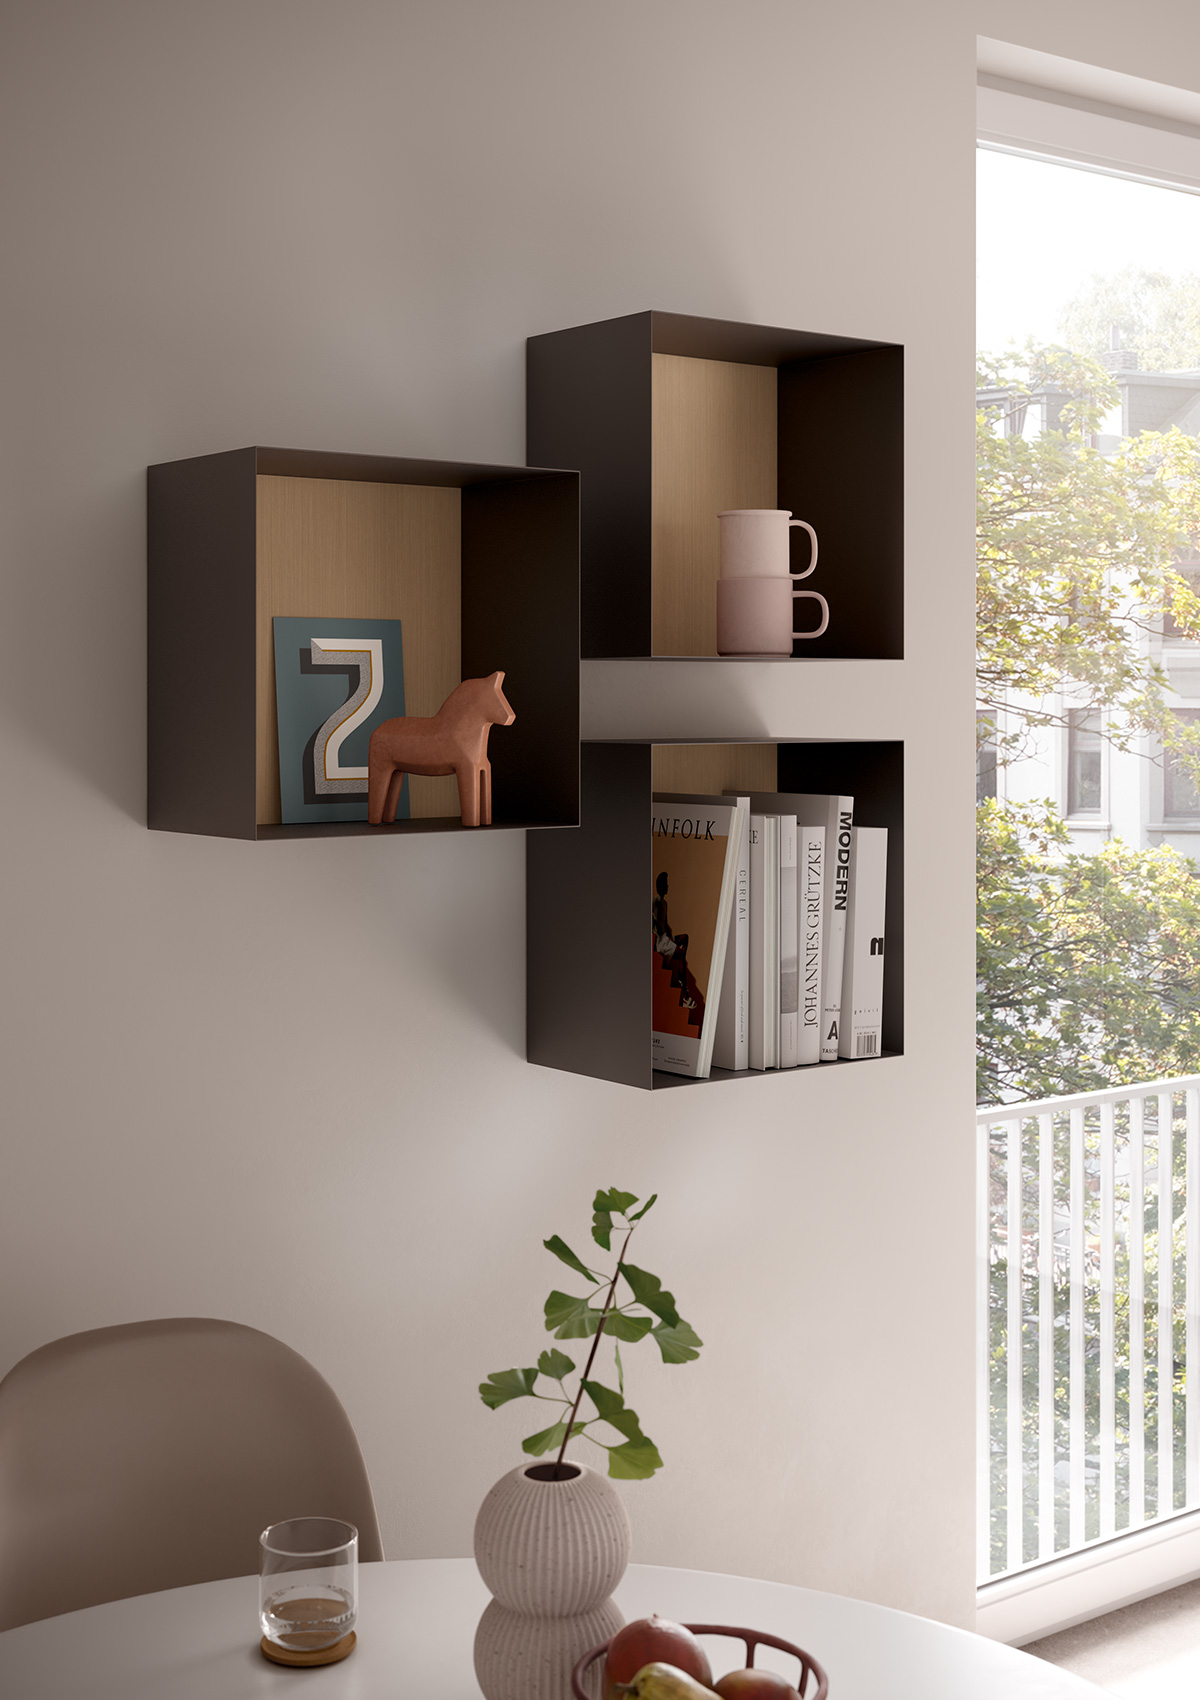 Imagen de estanterías de pared en forma de cubo, con pared trasera de roble fino natural y elementos decorativos